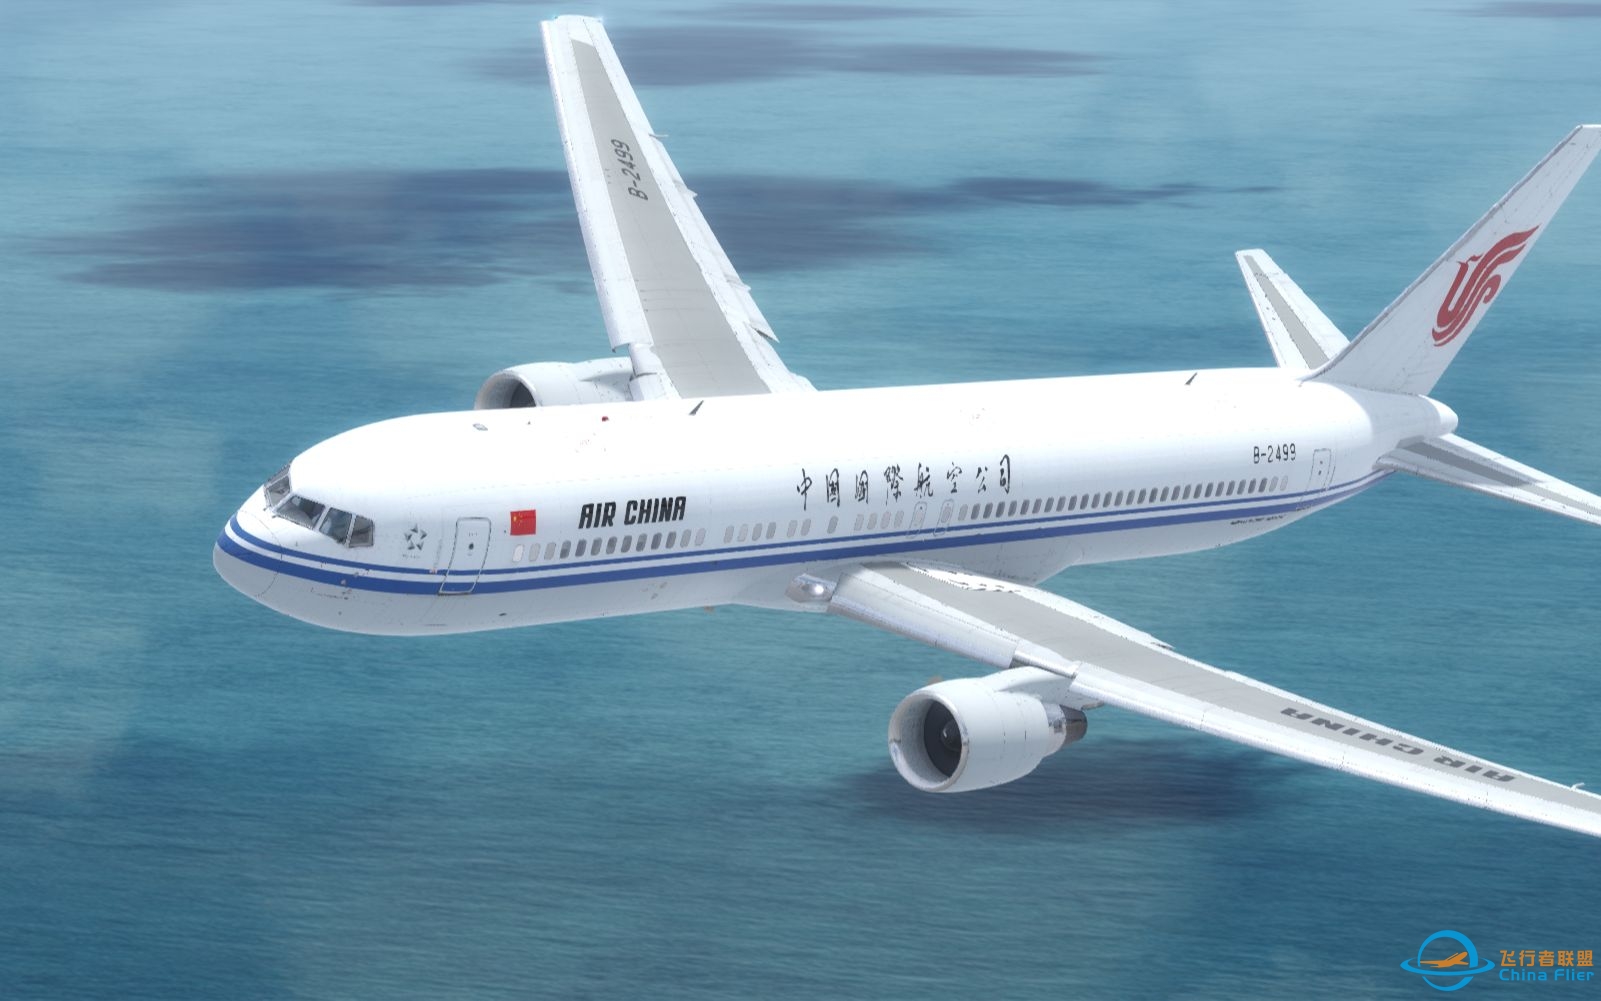 【Prepar3D落地】中国国际航空波音767-300ER落地上海虹桥-8062 